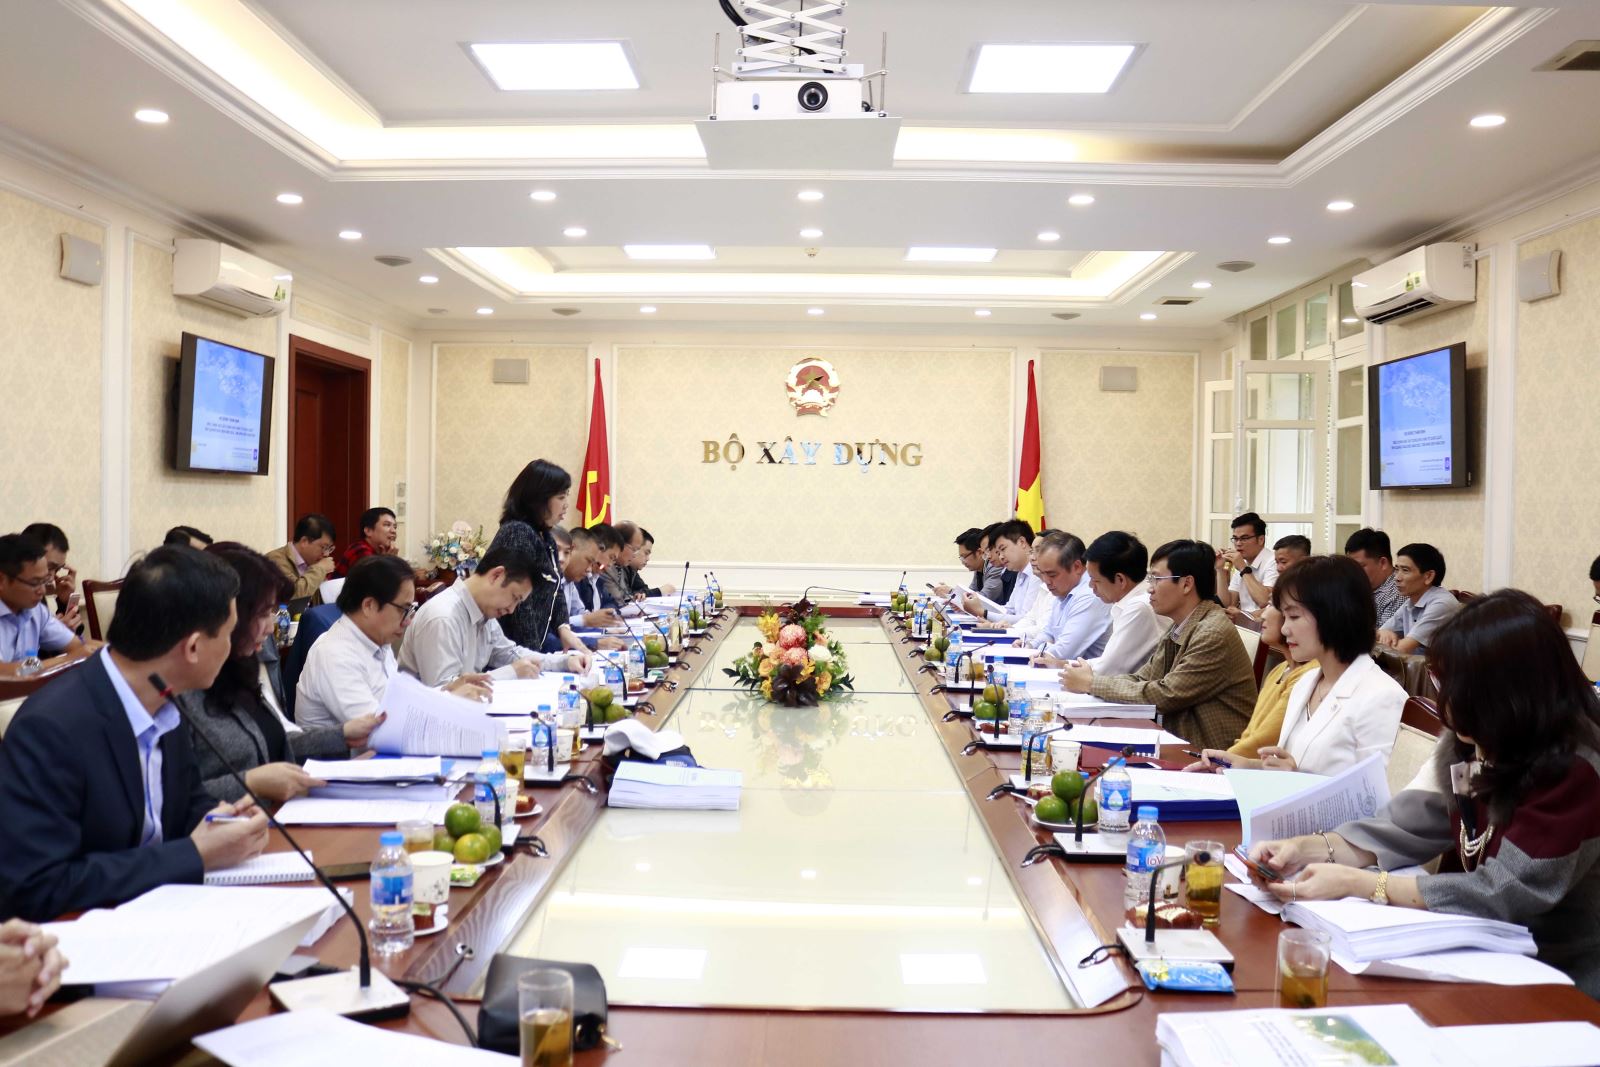 Vụ Quy hoạch – Kiến trúc (Bộ Xây dựng) Trần Thu Hằng đã chủ trì Hội nghị thẩm định đồ án điều chỉnh Quy hoạch chung xây dựng Khu kinh tế Dung Quất, tỉnh Quảng Ngãi đến năm 2035, tầm nhìn đến năm 2050.